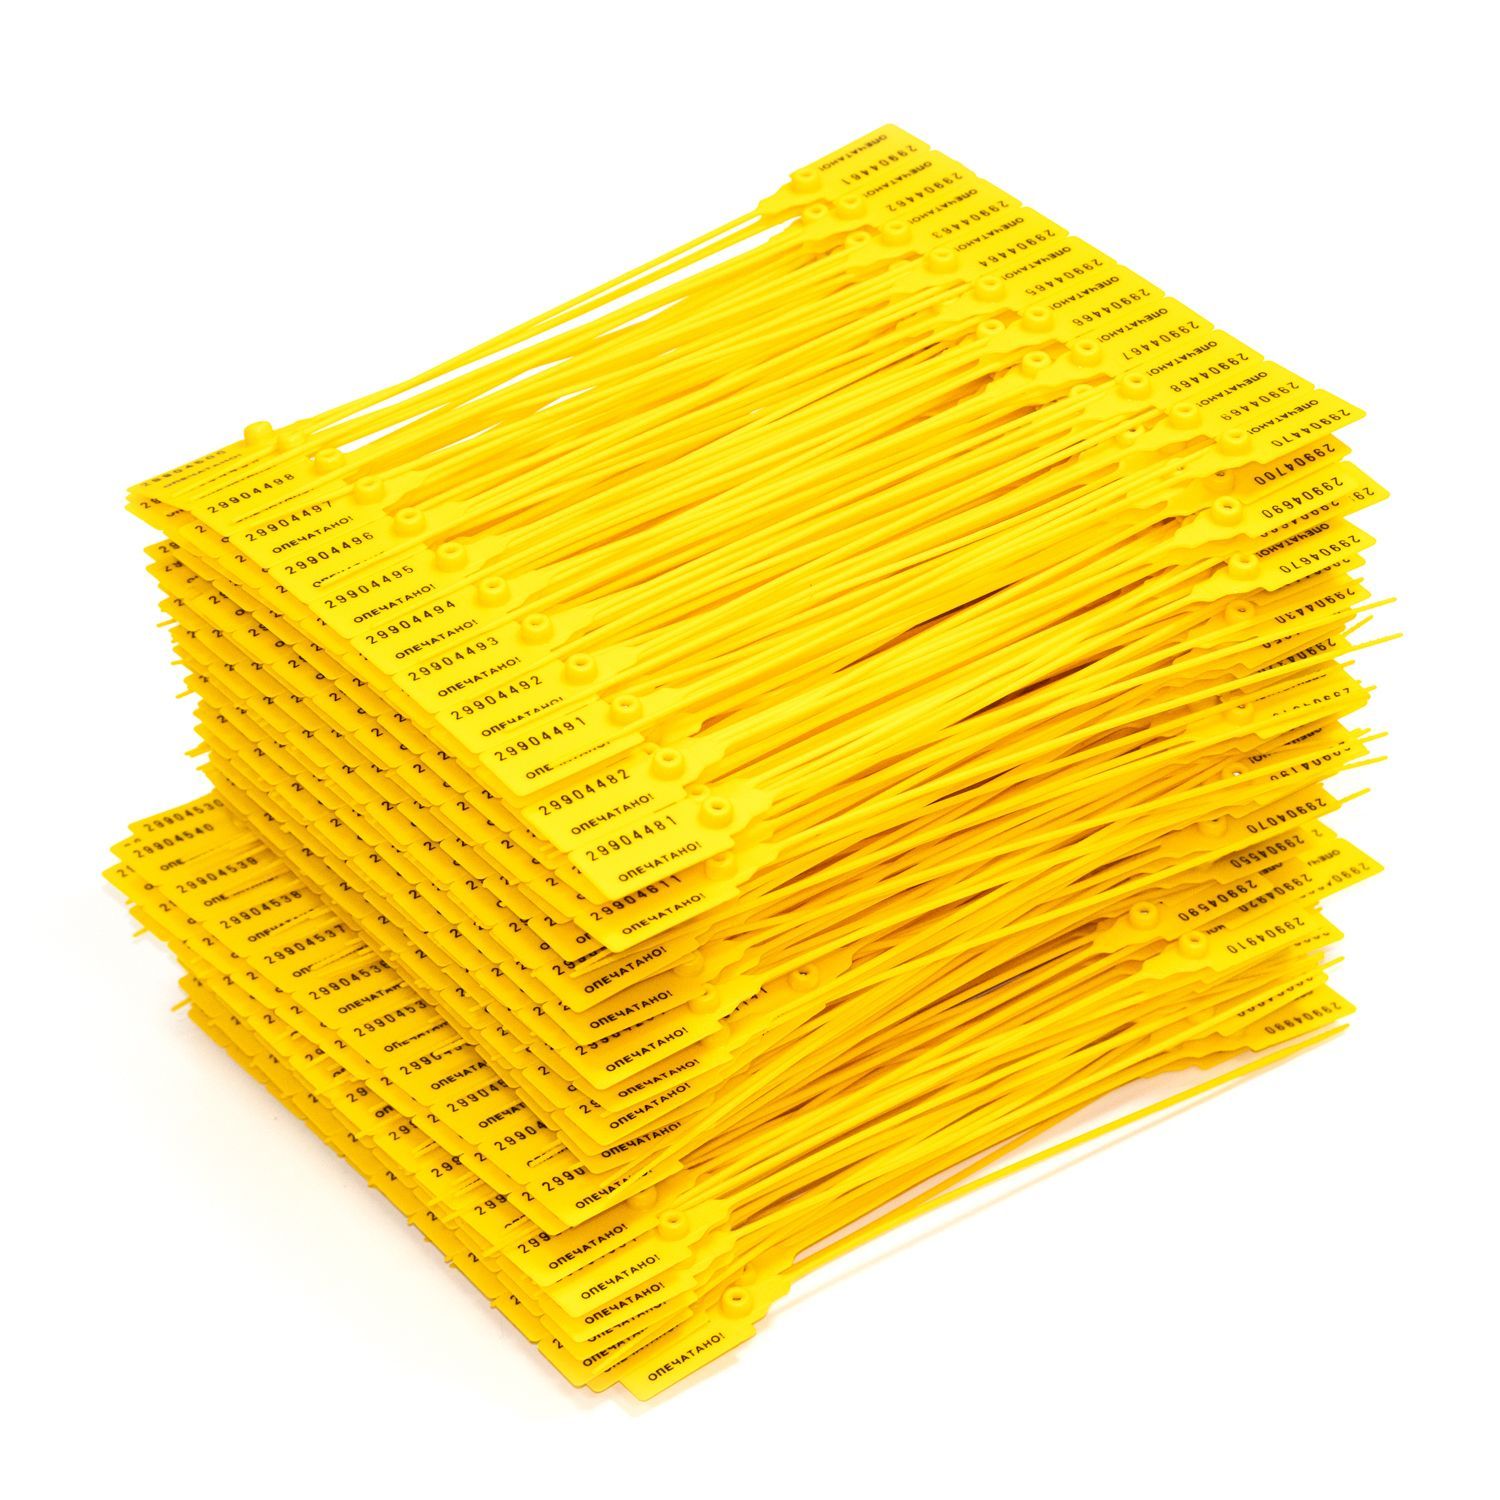 Пломба универсальная номерная, Надежные пломбы, 220 мм, желтая, 1000 штук